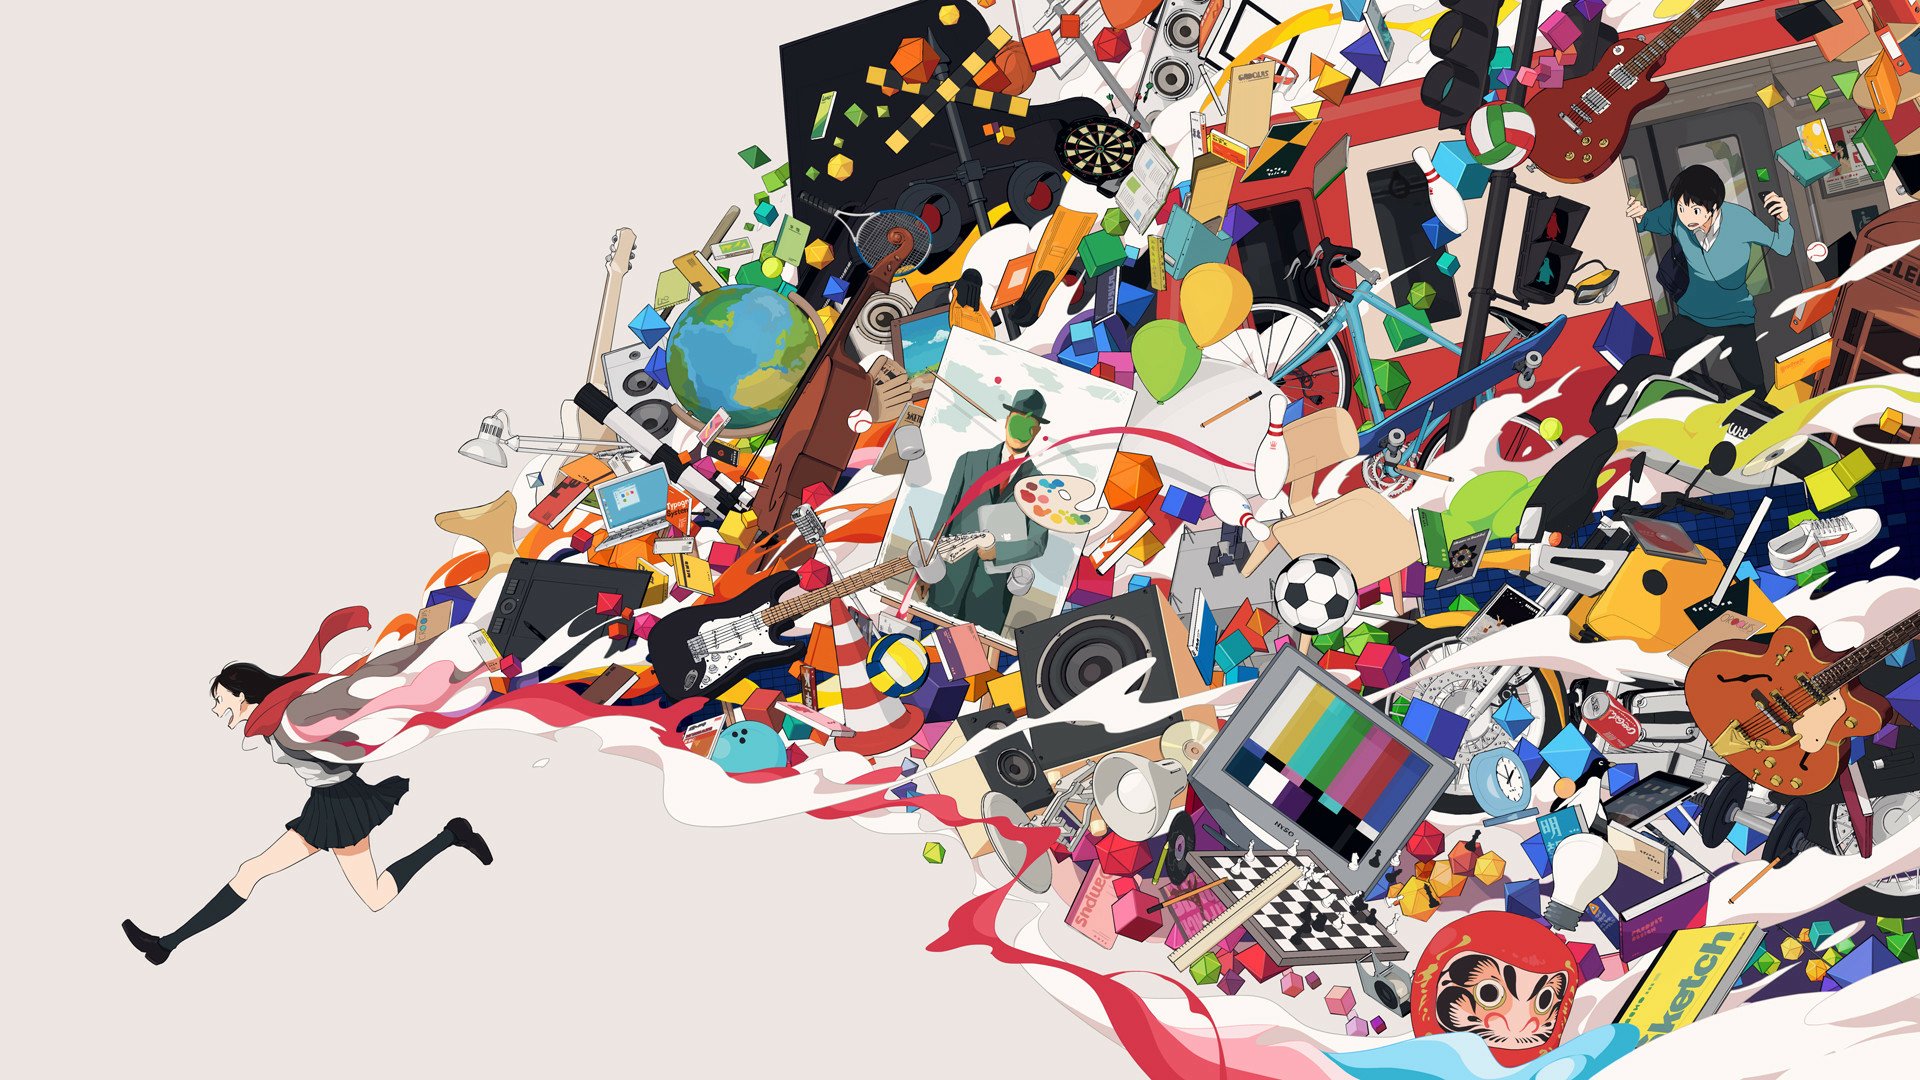 Colorful Anime Girl Wallpapers on WallpaperDog